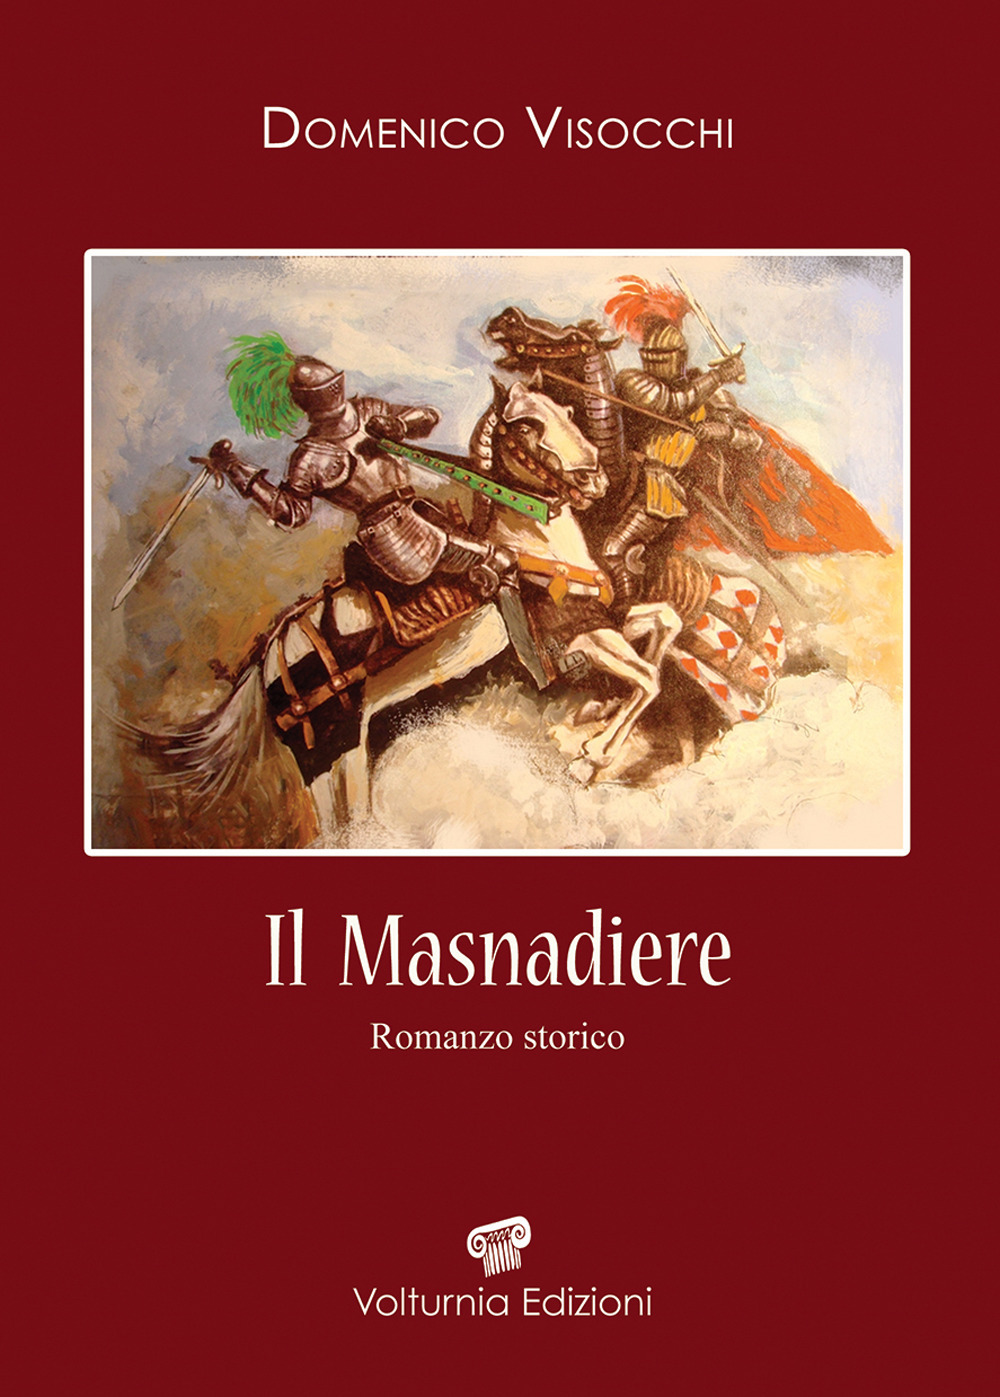 Libri Domenico Visocchi - Il Masnadiere NUOVO SIGILLATO, EDIZIONE DEL 10/04/2019 SUBITO DISPONIBILE